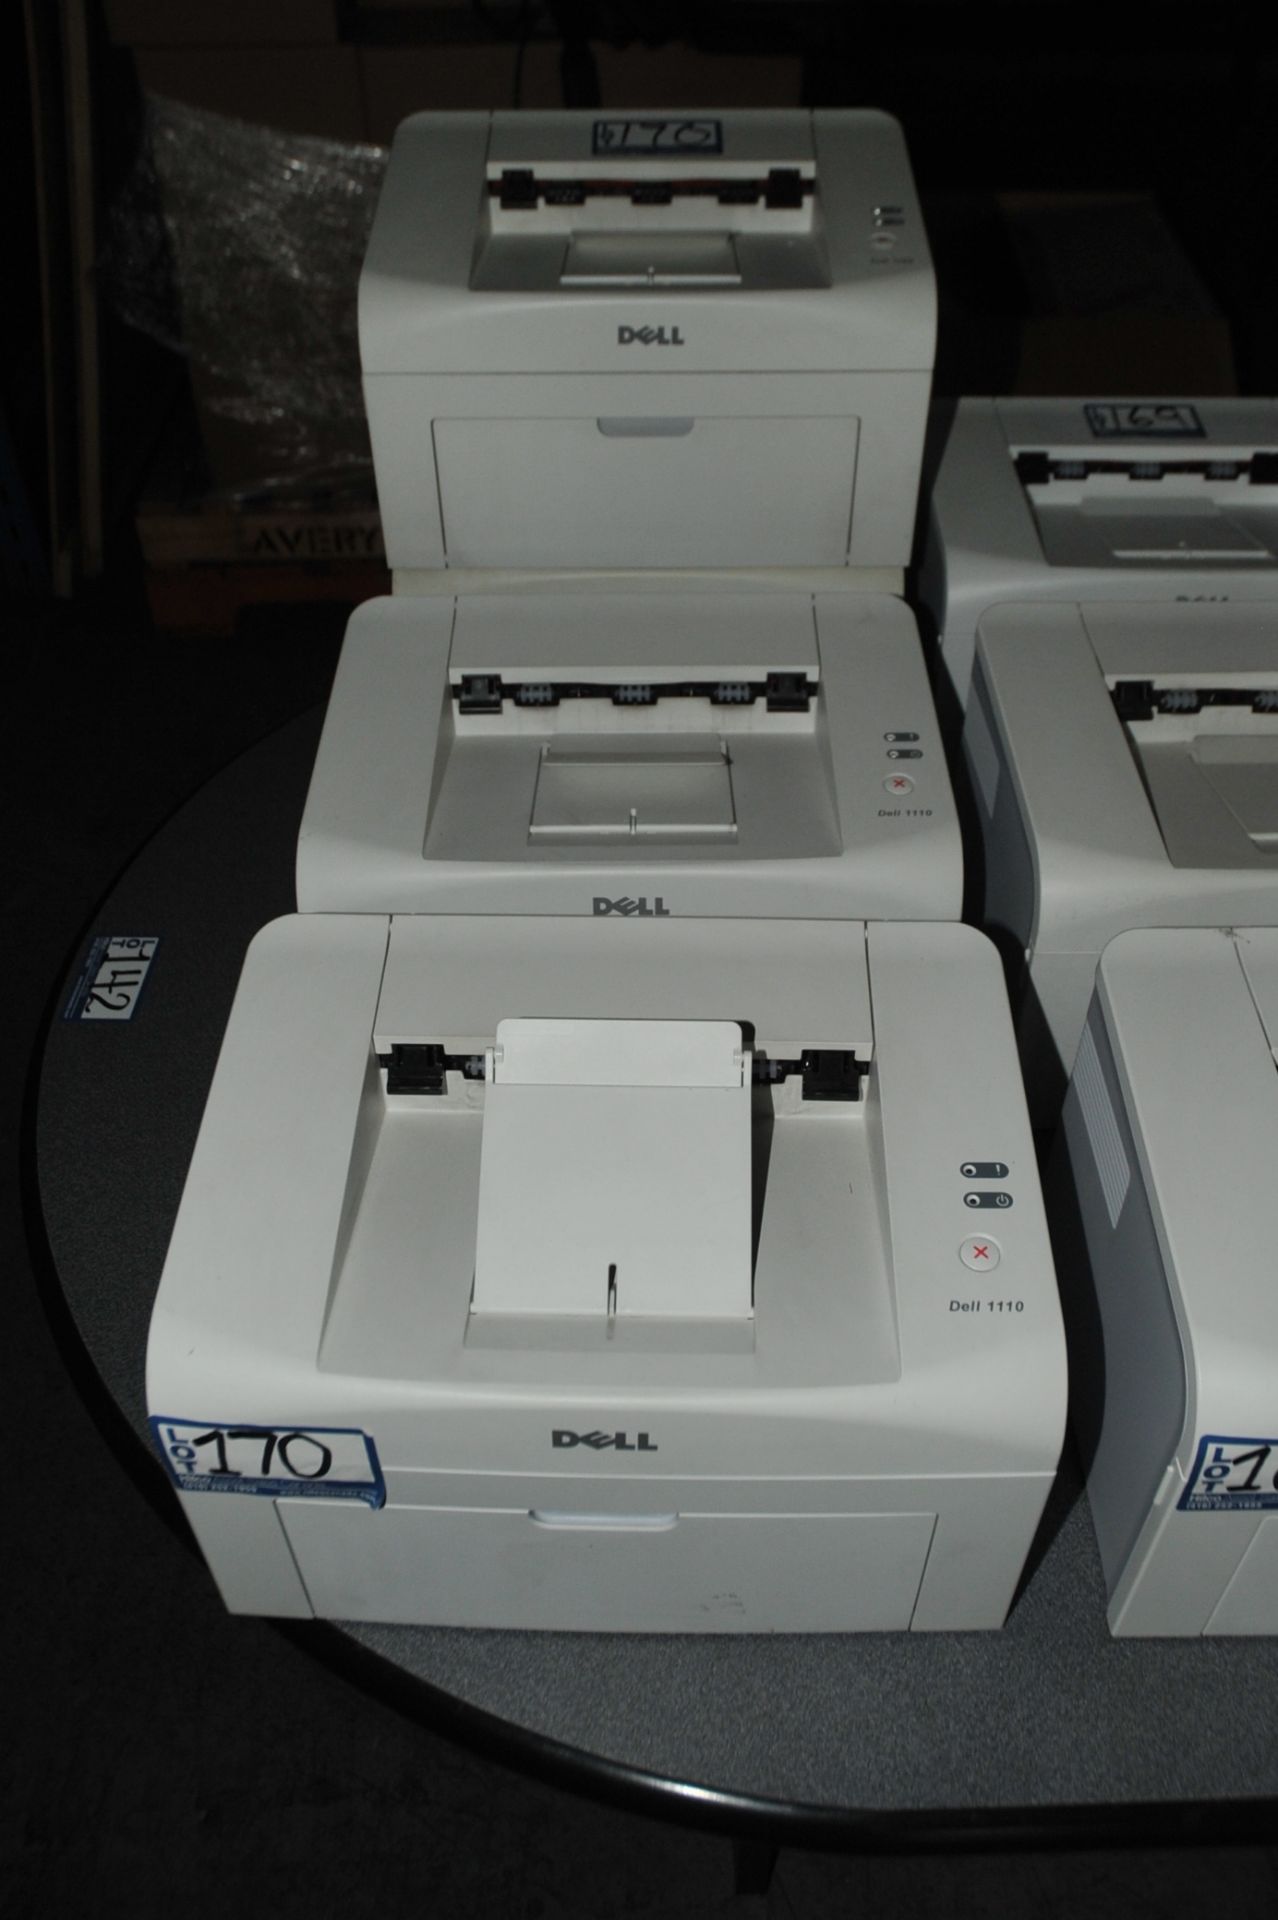 (4) Dell Model 1110 Printers